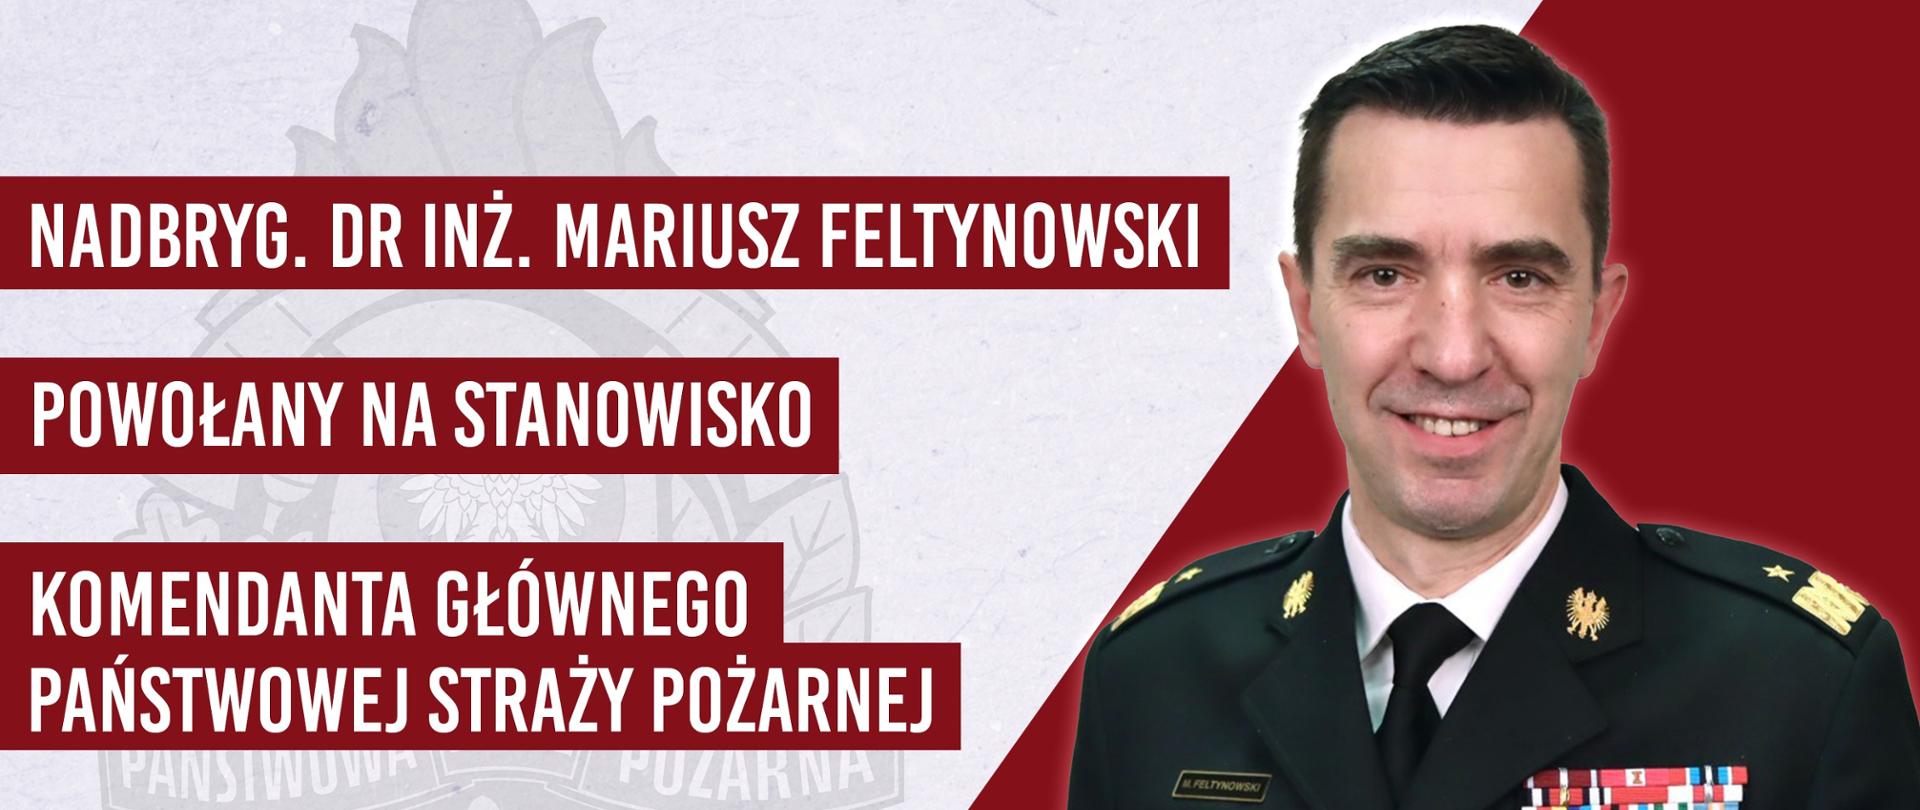 nadbryg. dr inż. Mariusz Feltynowski powołany na stanowisko komendanta głównego państwowej straży pożarnej. 